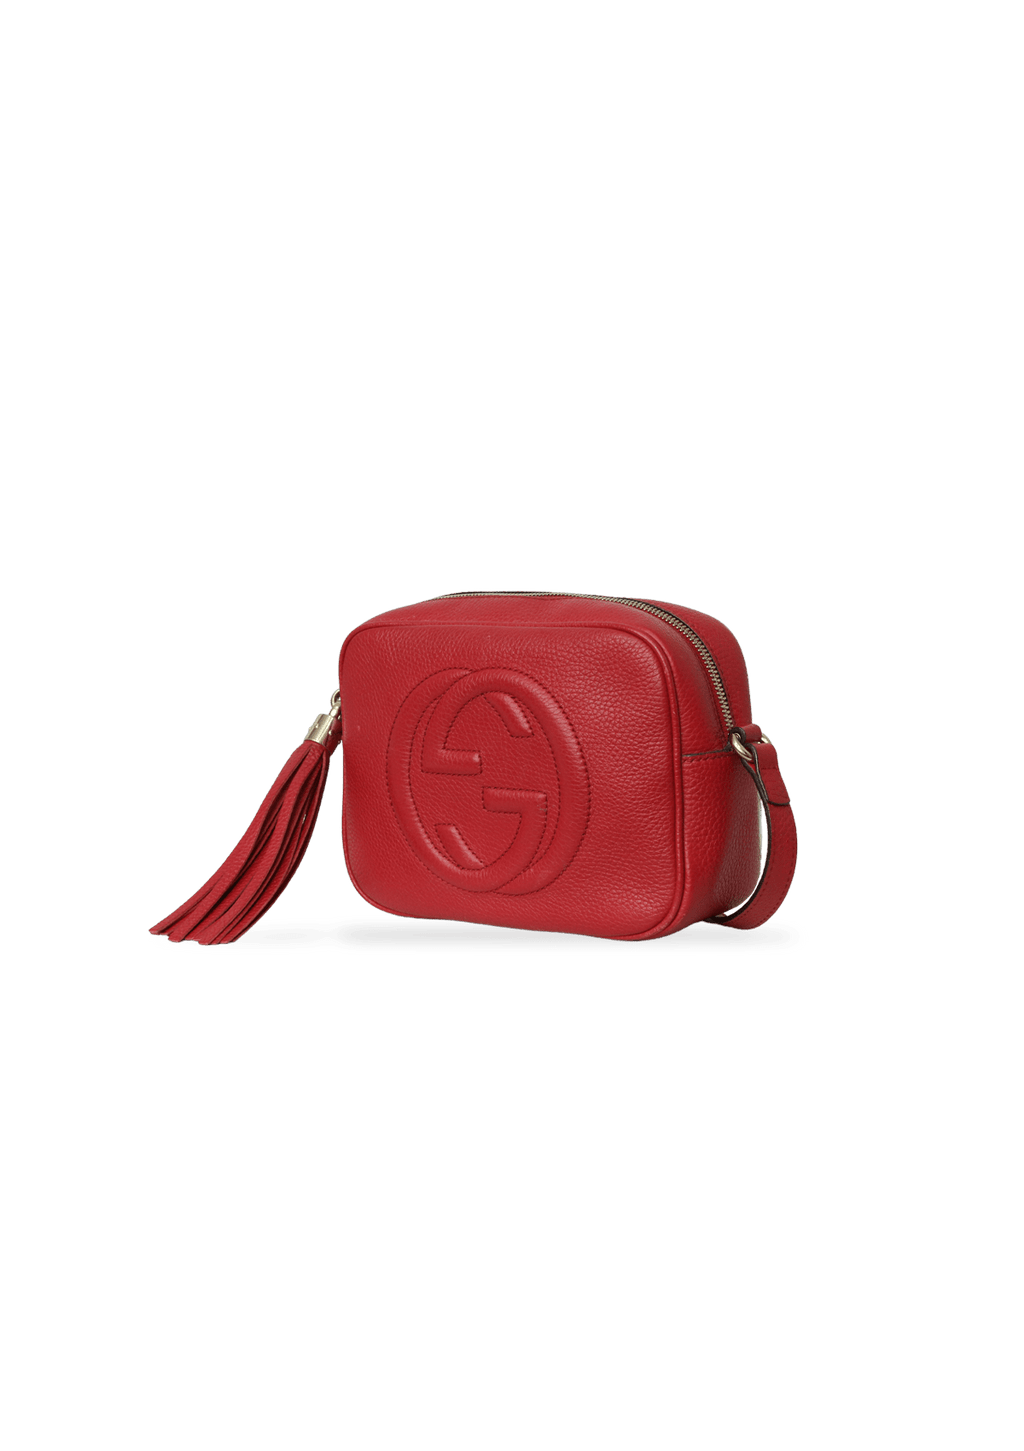 Bolsa Gucci Soho Disco Bag - Novo Luxo